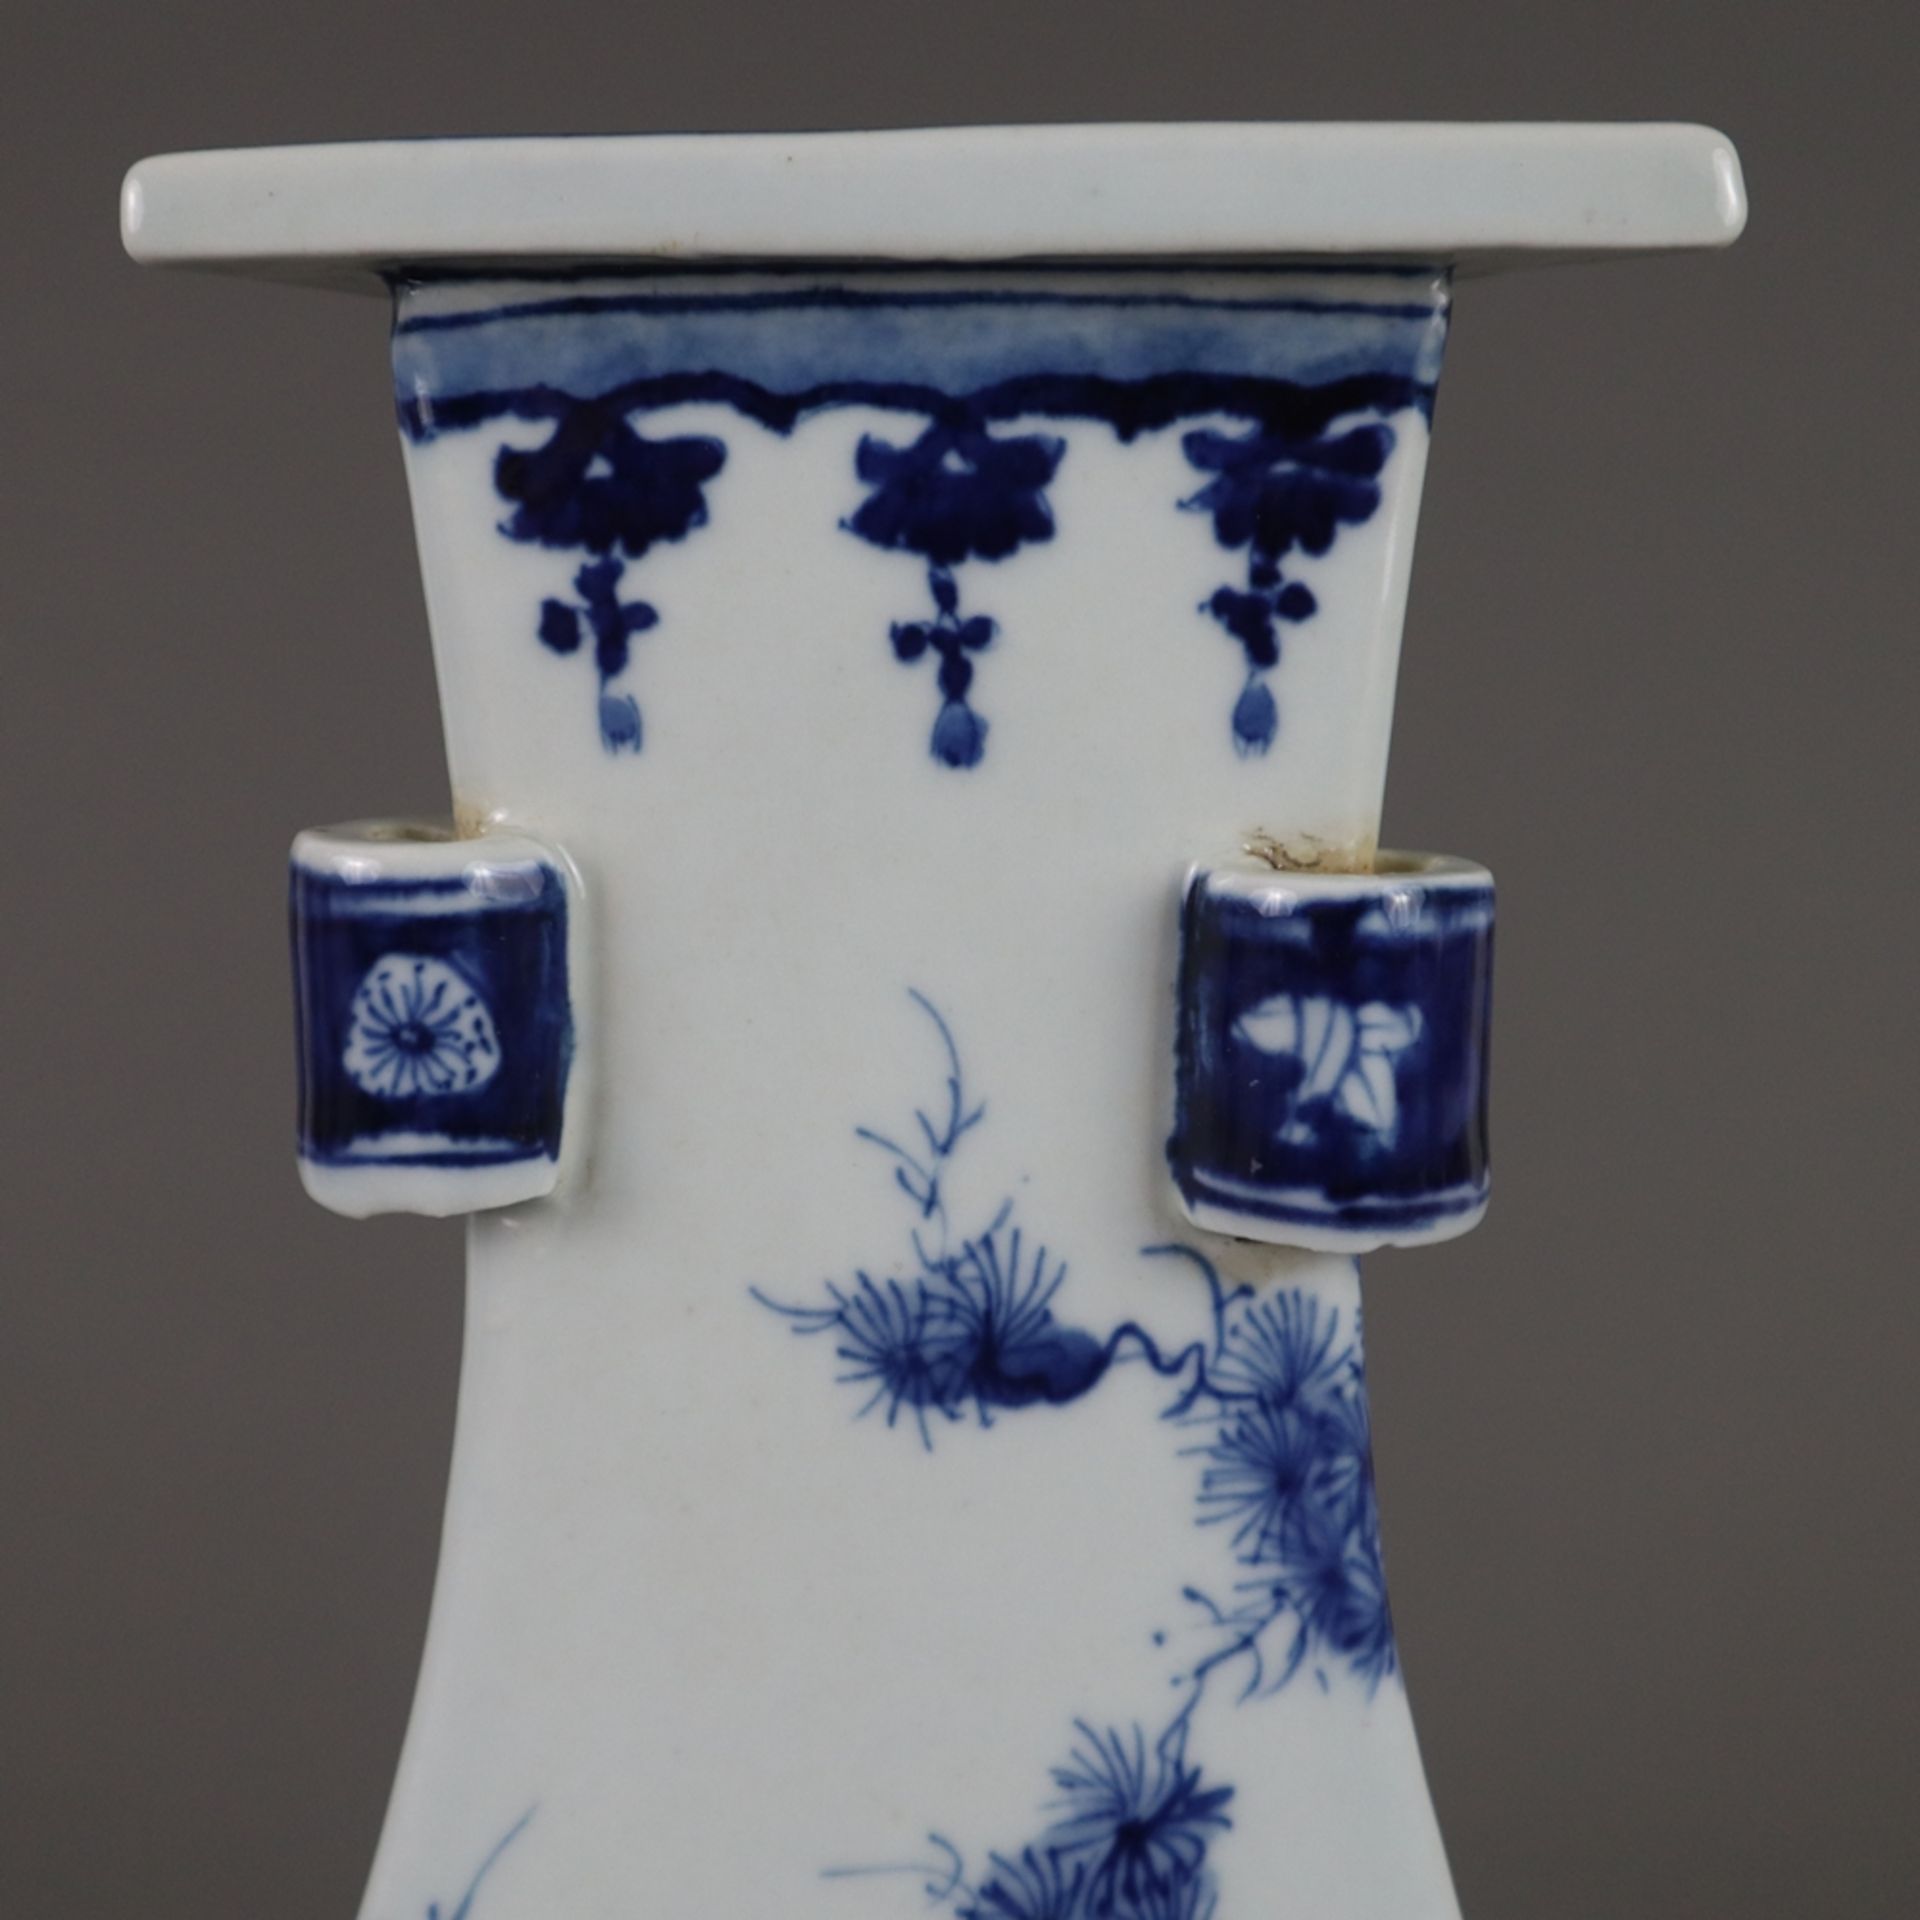 Dreiecksvase - China, allseits dekoriert in Unterglasurblau, Wandung mit von Ornamentborten gerahmt - Bild 8 aus 9